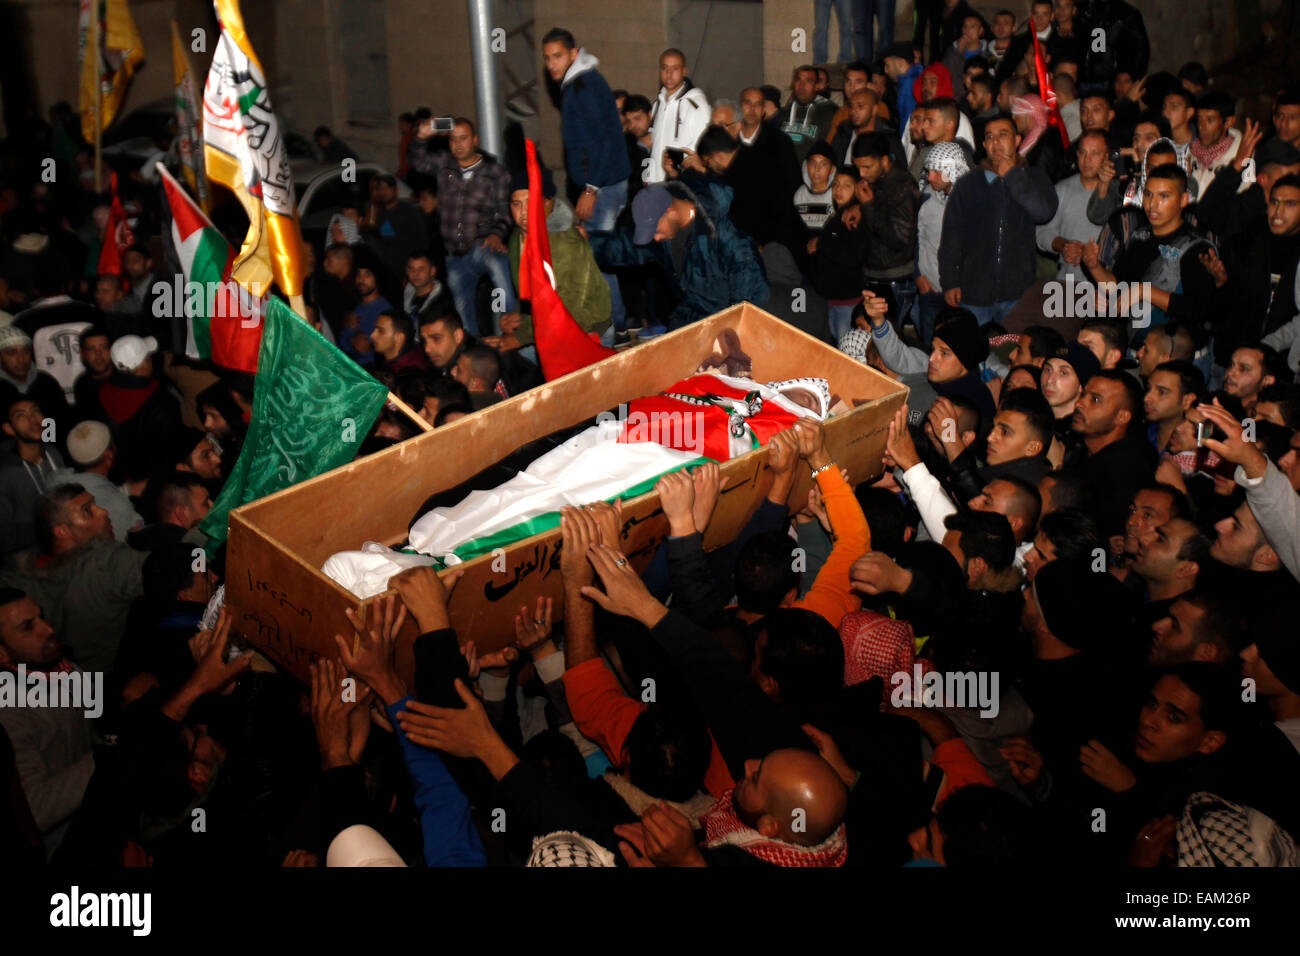 Jérusalem. 17 novembre, 2014. Pleureuses palestiniennes d'assister aux funérailles de bus driver Yusuf Hassan al-Ramouni dans la ville d'Abu Dis, près de Jérusalem, le 17 novembre 2014. Un chauffeur palestinien a été trouvé pendu à l'intérieur de son véhicule à Jérusalem, un incident palestiniens faute sur 'les colons juifs', tandis qu'Israël a dit que c'était un suicide apparent. Tard dimanche soir, le corps de Yusuf Hassan al-Ramouni, 32 ans, a été découvert pendu à l'intérieur d'un bus stationné à la Jérusalem d'autobus. © Muammar Awad/Xinhua/Alamy Live News Banque D'Images